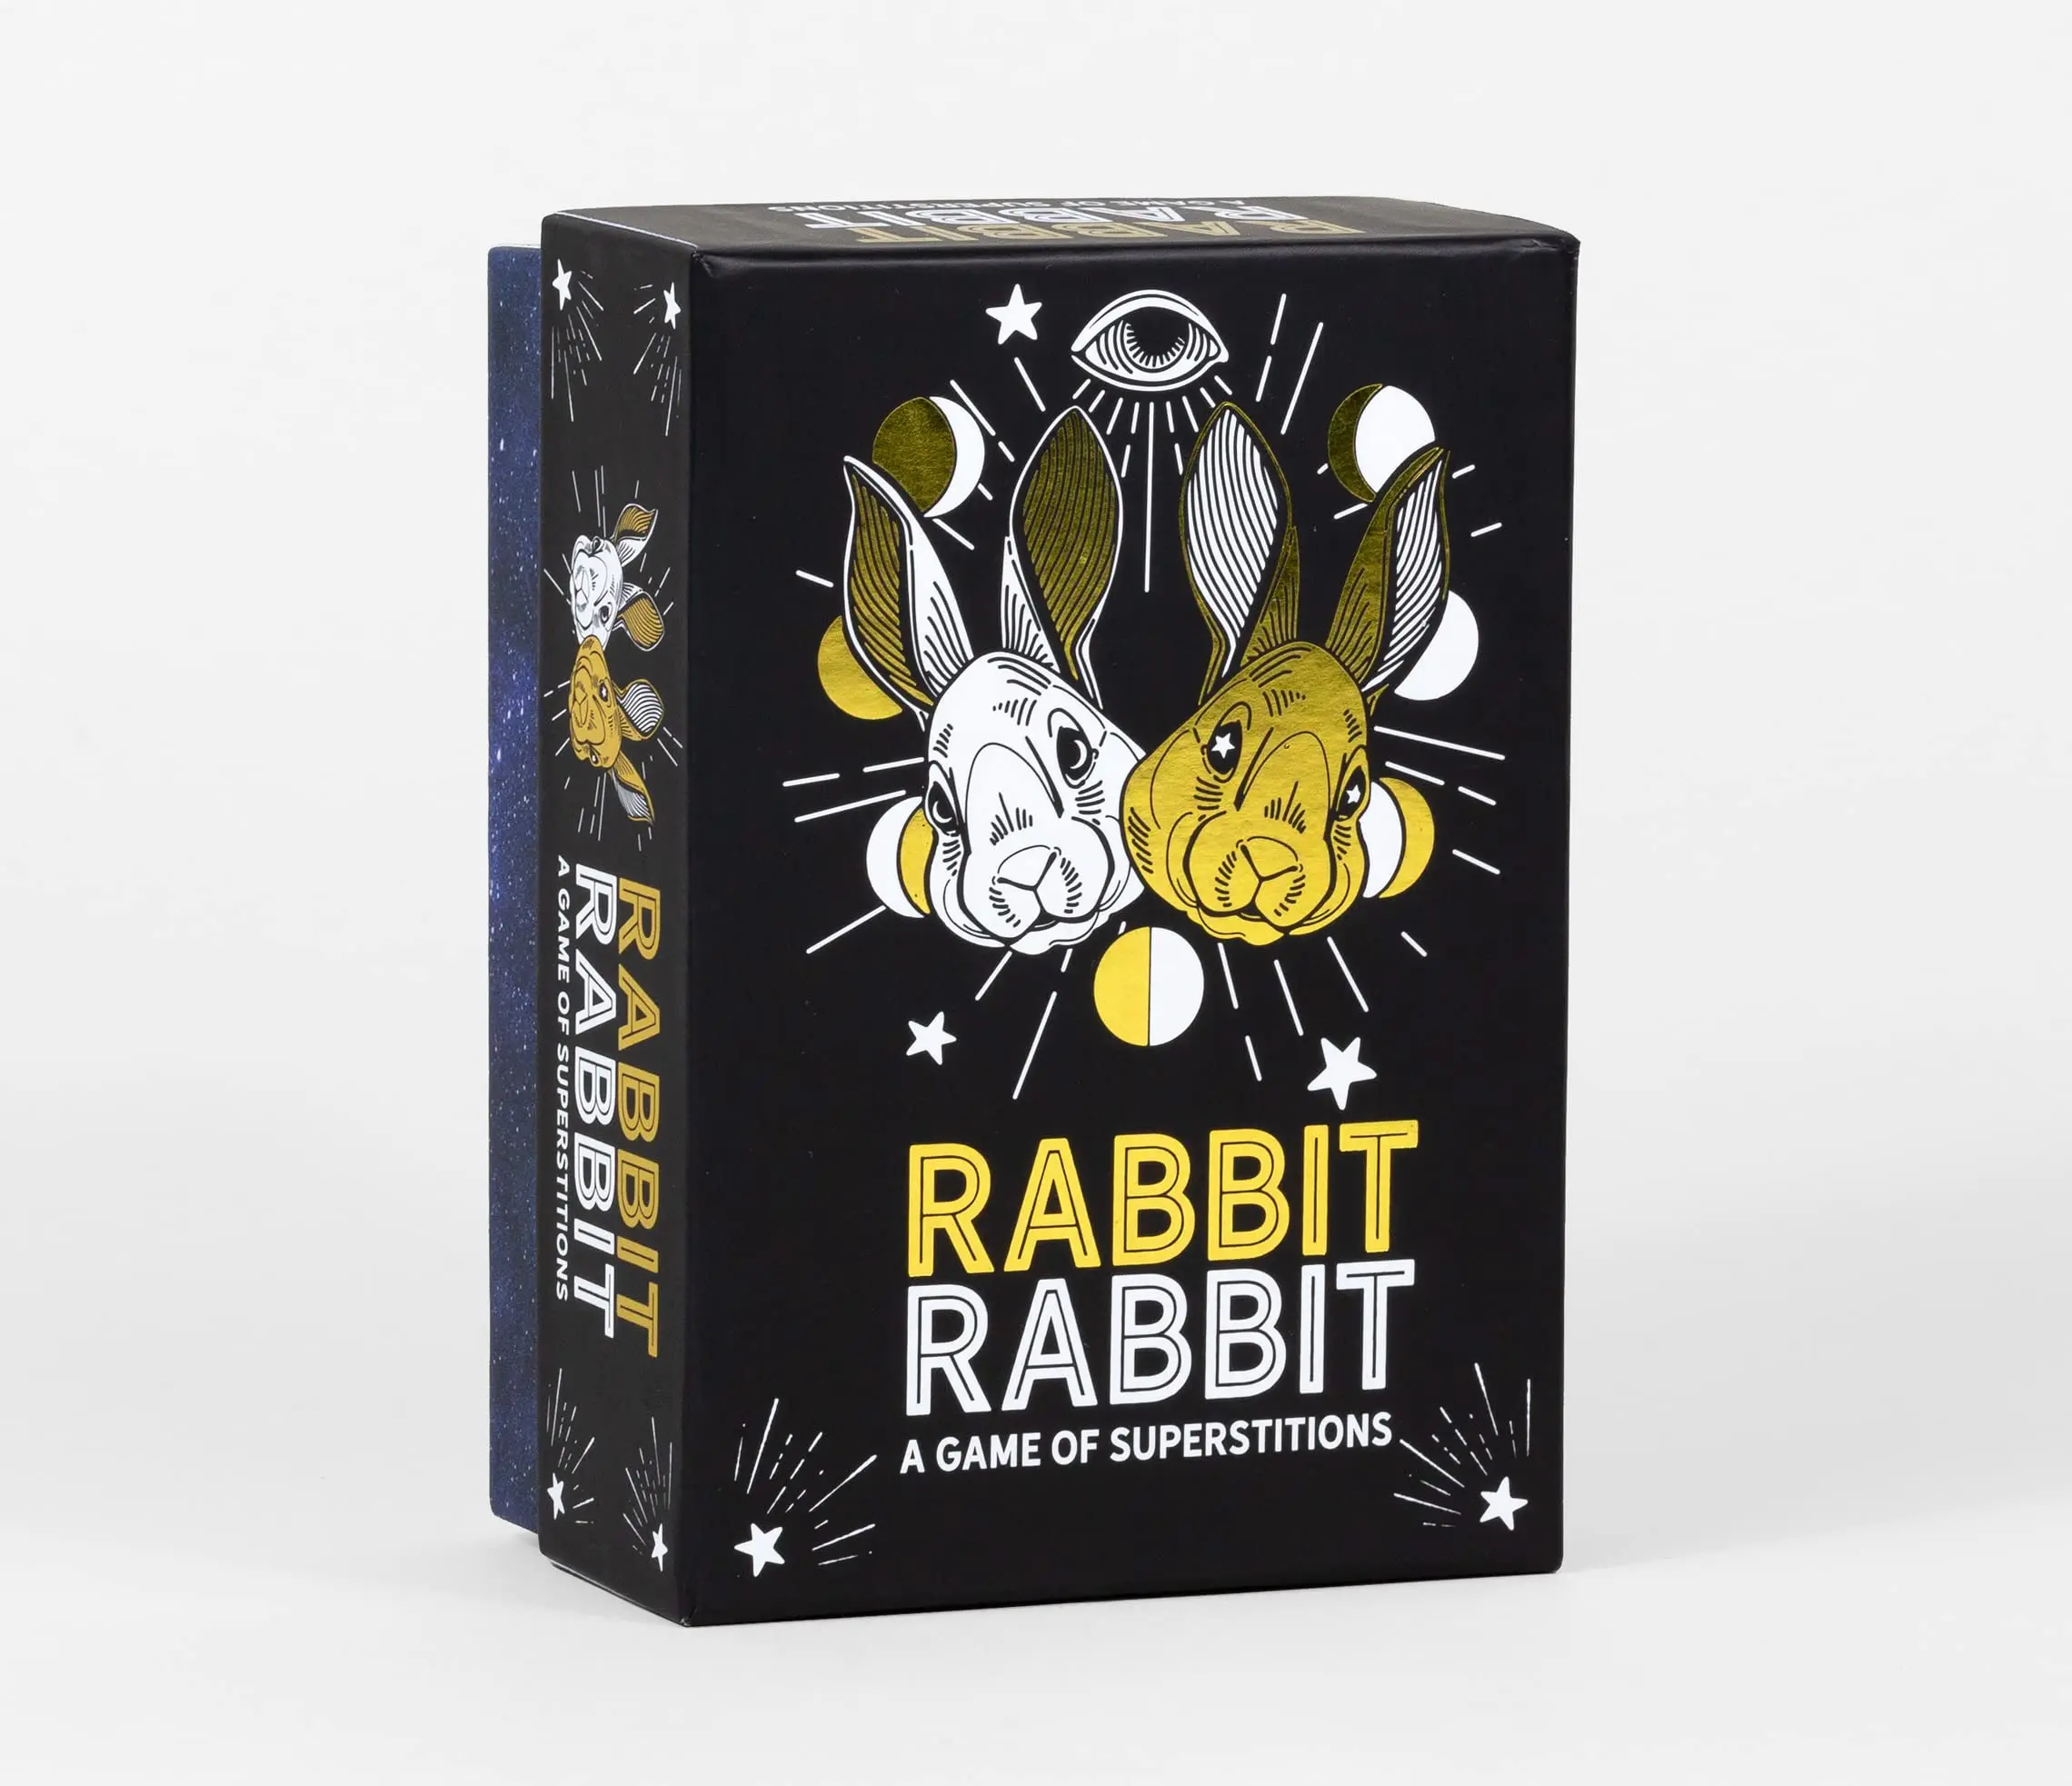 rabbit juego - Cómo se llama el juego de los dos conejos